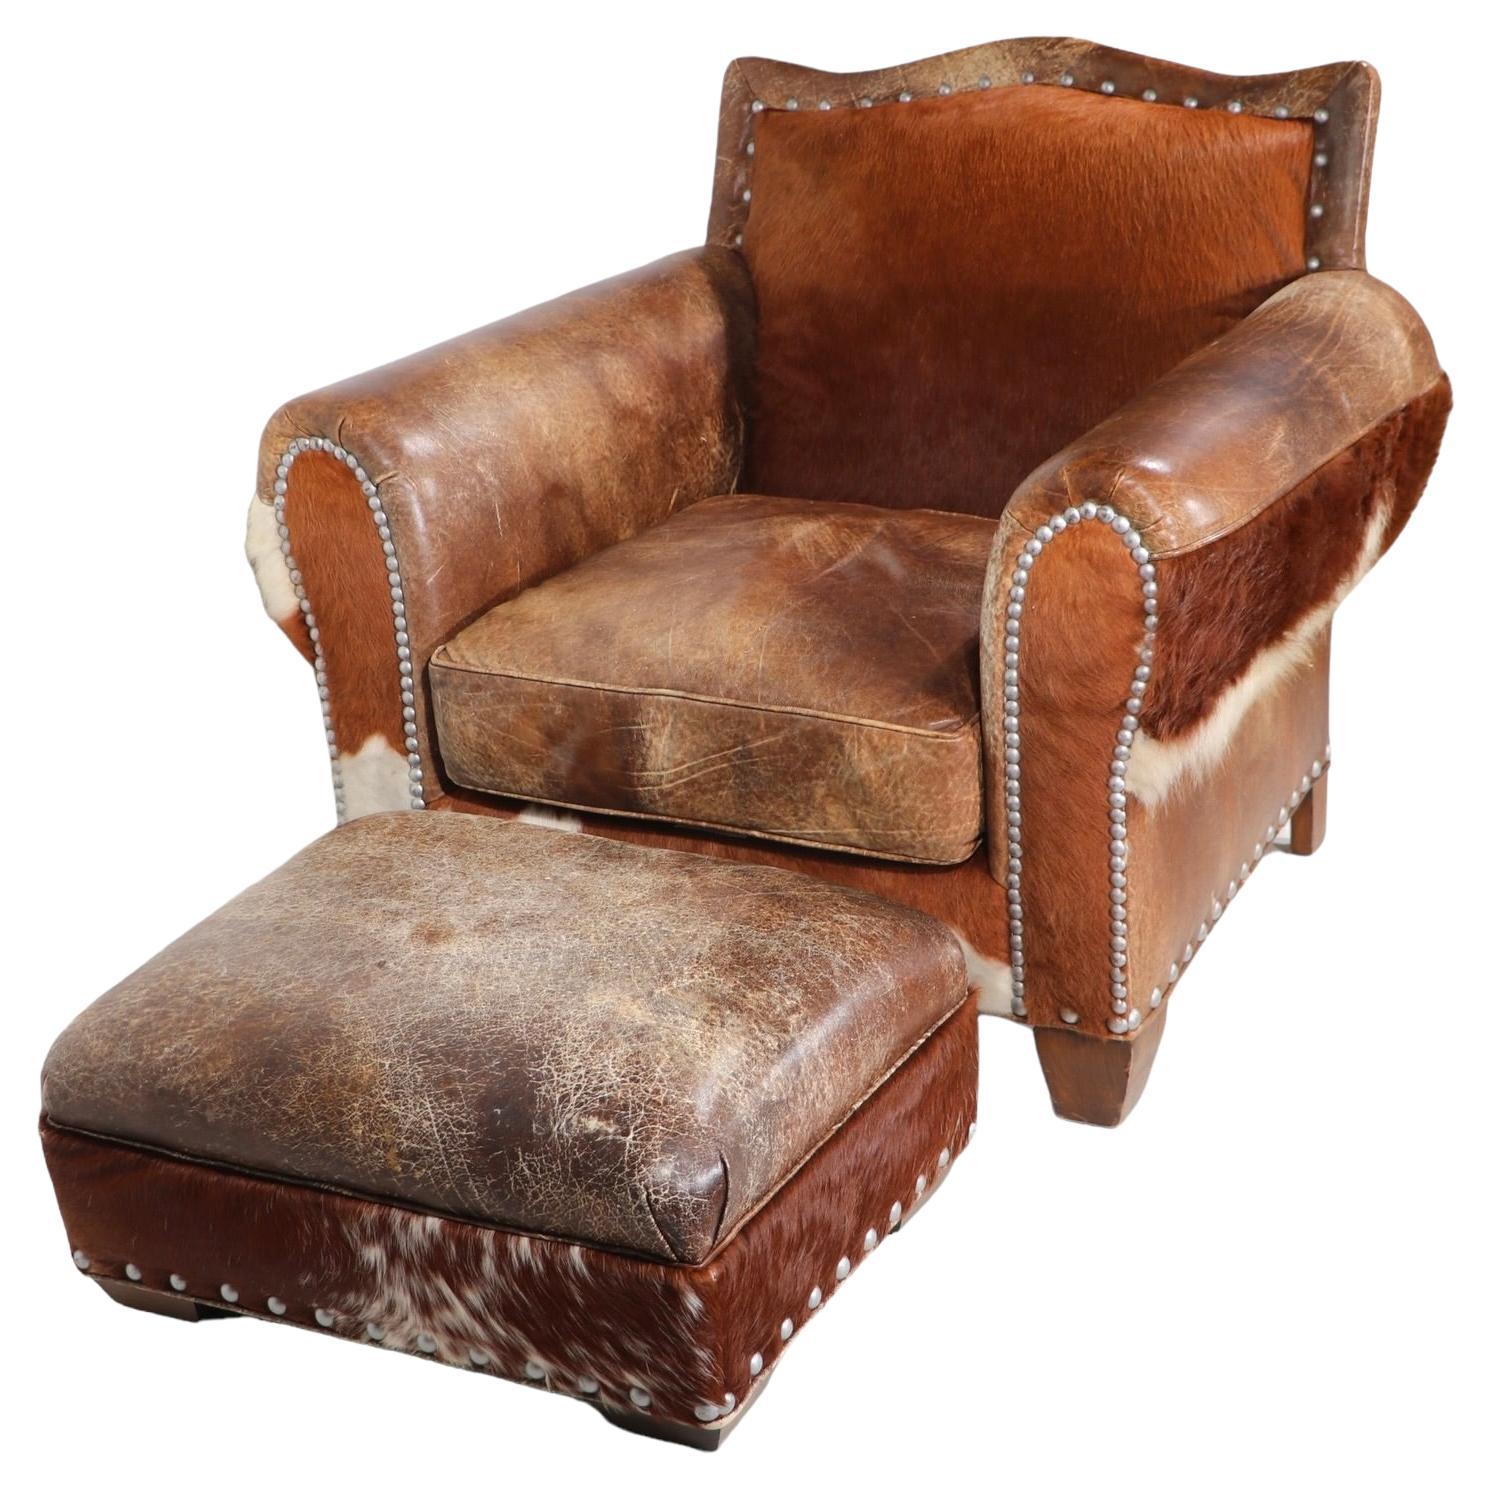 Außergewöhnliches Leder im Western-Stil und  Sessel und Ottomane aus Kuhfell von der bekannten amerikanischen Möbelfirma Old Hickory Tannery. Diese Stücke sind in ausgezeichnetem, originalem, sauberem und gebrauchsfertigem Zustand, frei von Schäden